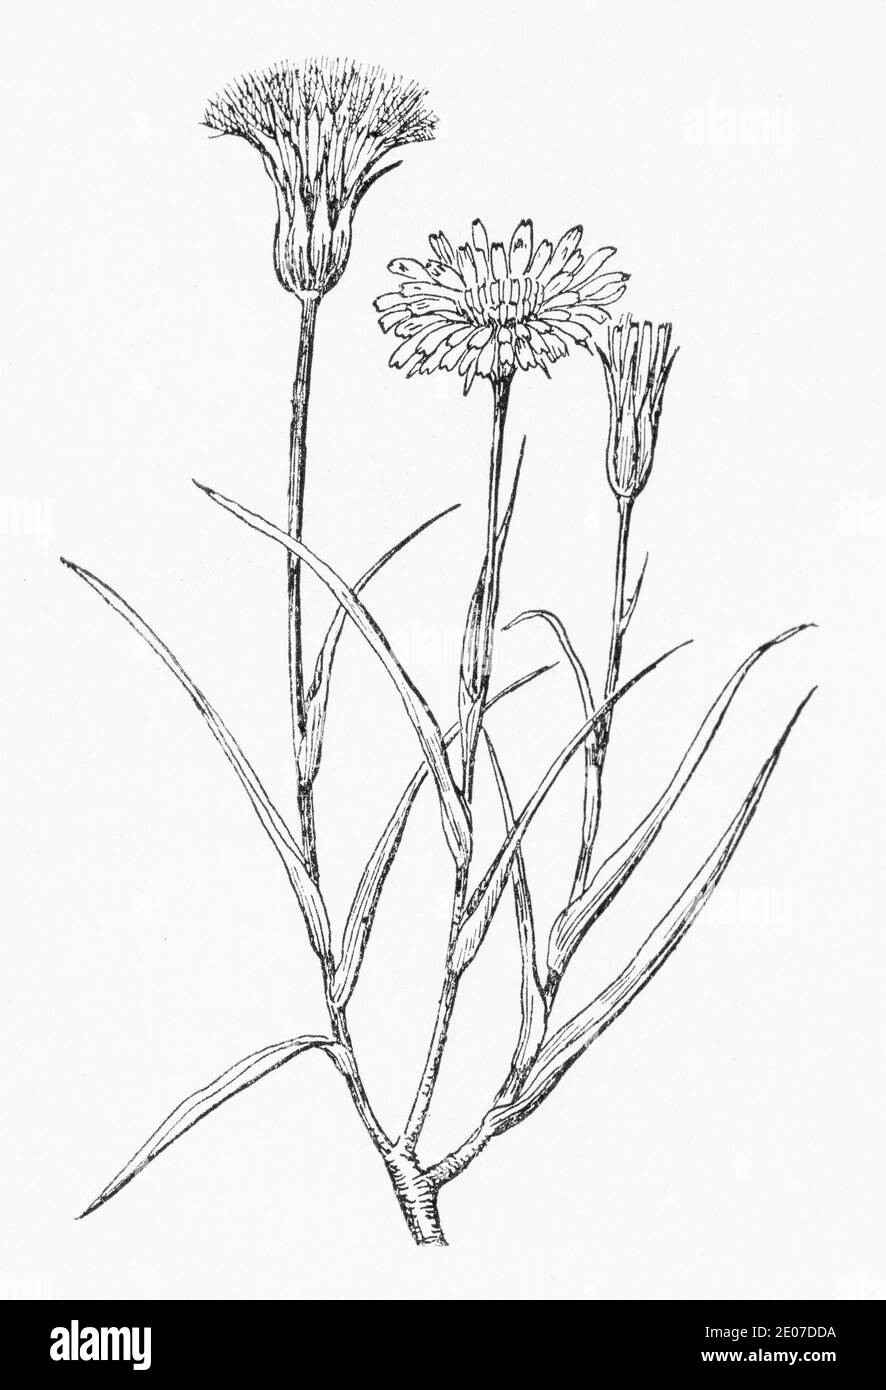 Alte botanische Illustration Gravur von Gelber Goatsbeard / Tragopogon pratensis. Traditionelle Heilkräuter Pflanze. Siehe Hinweise Stockfoto